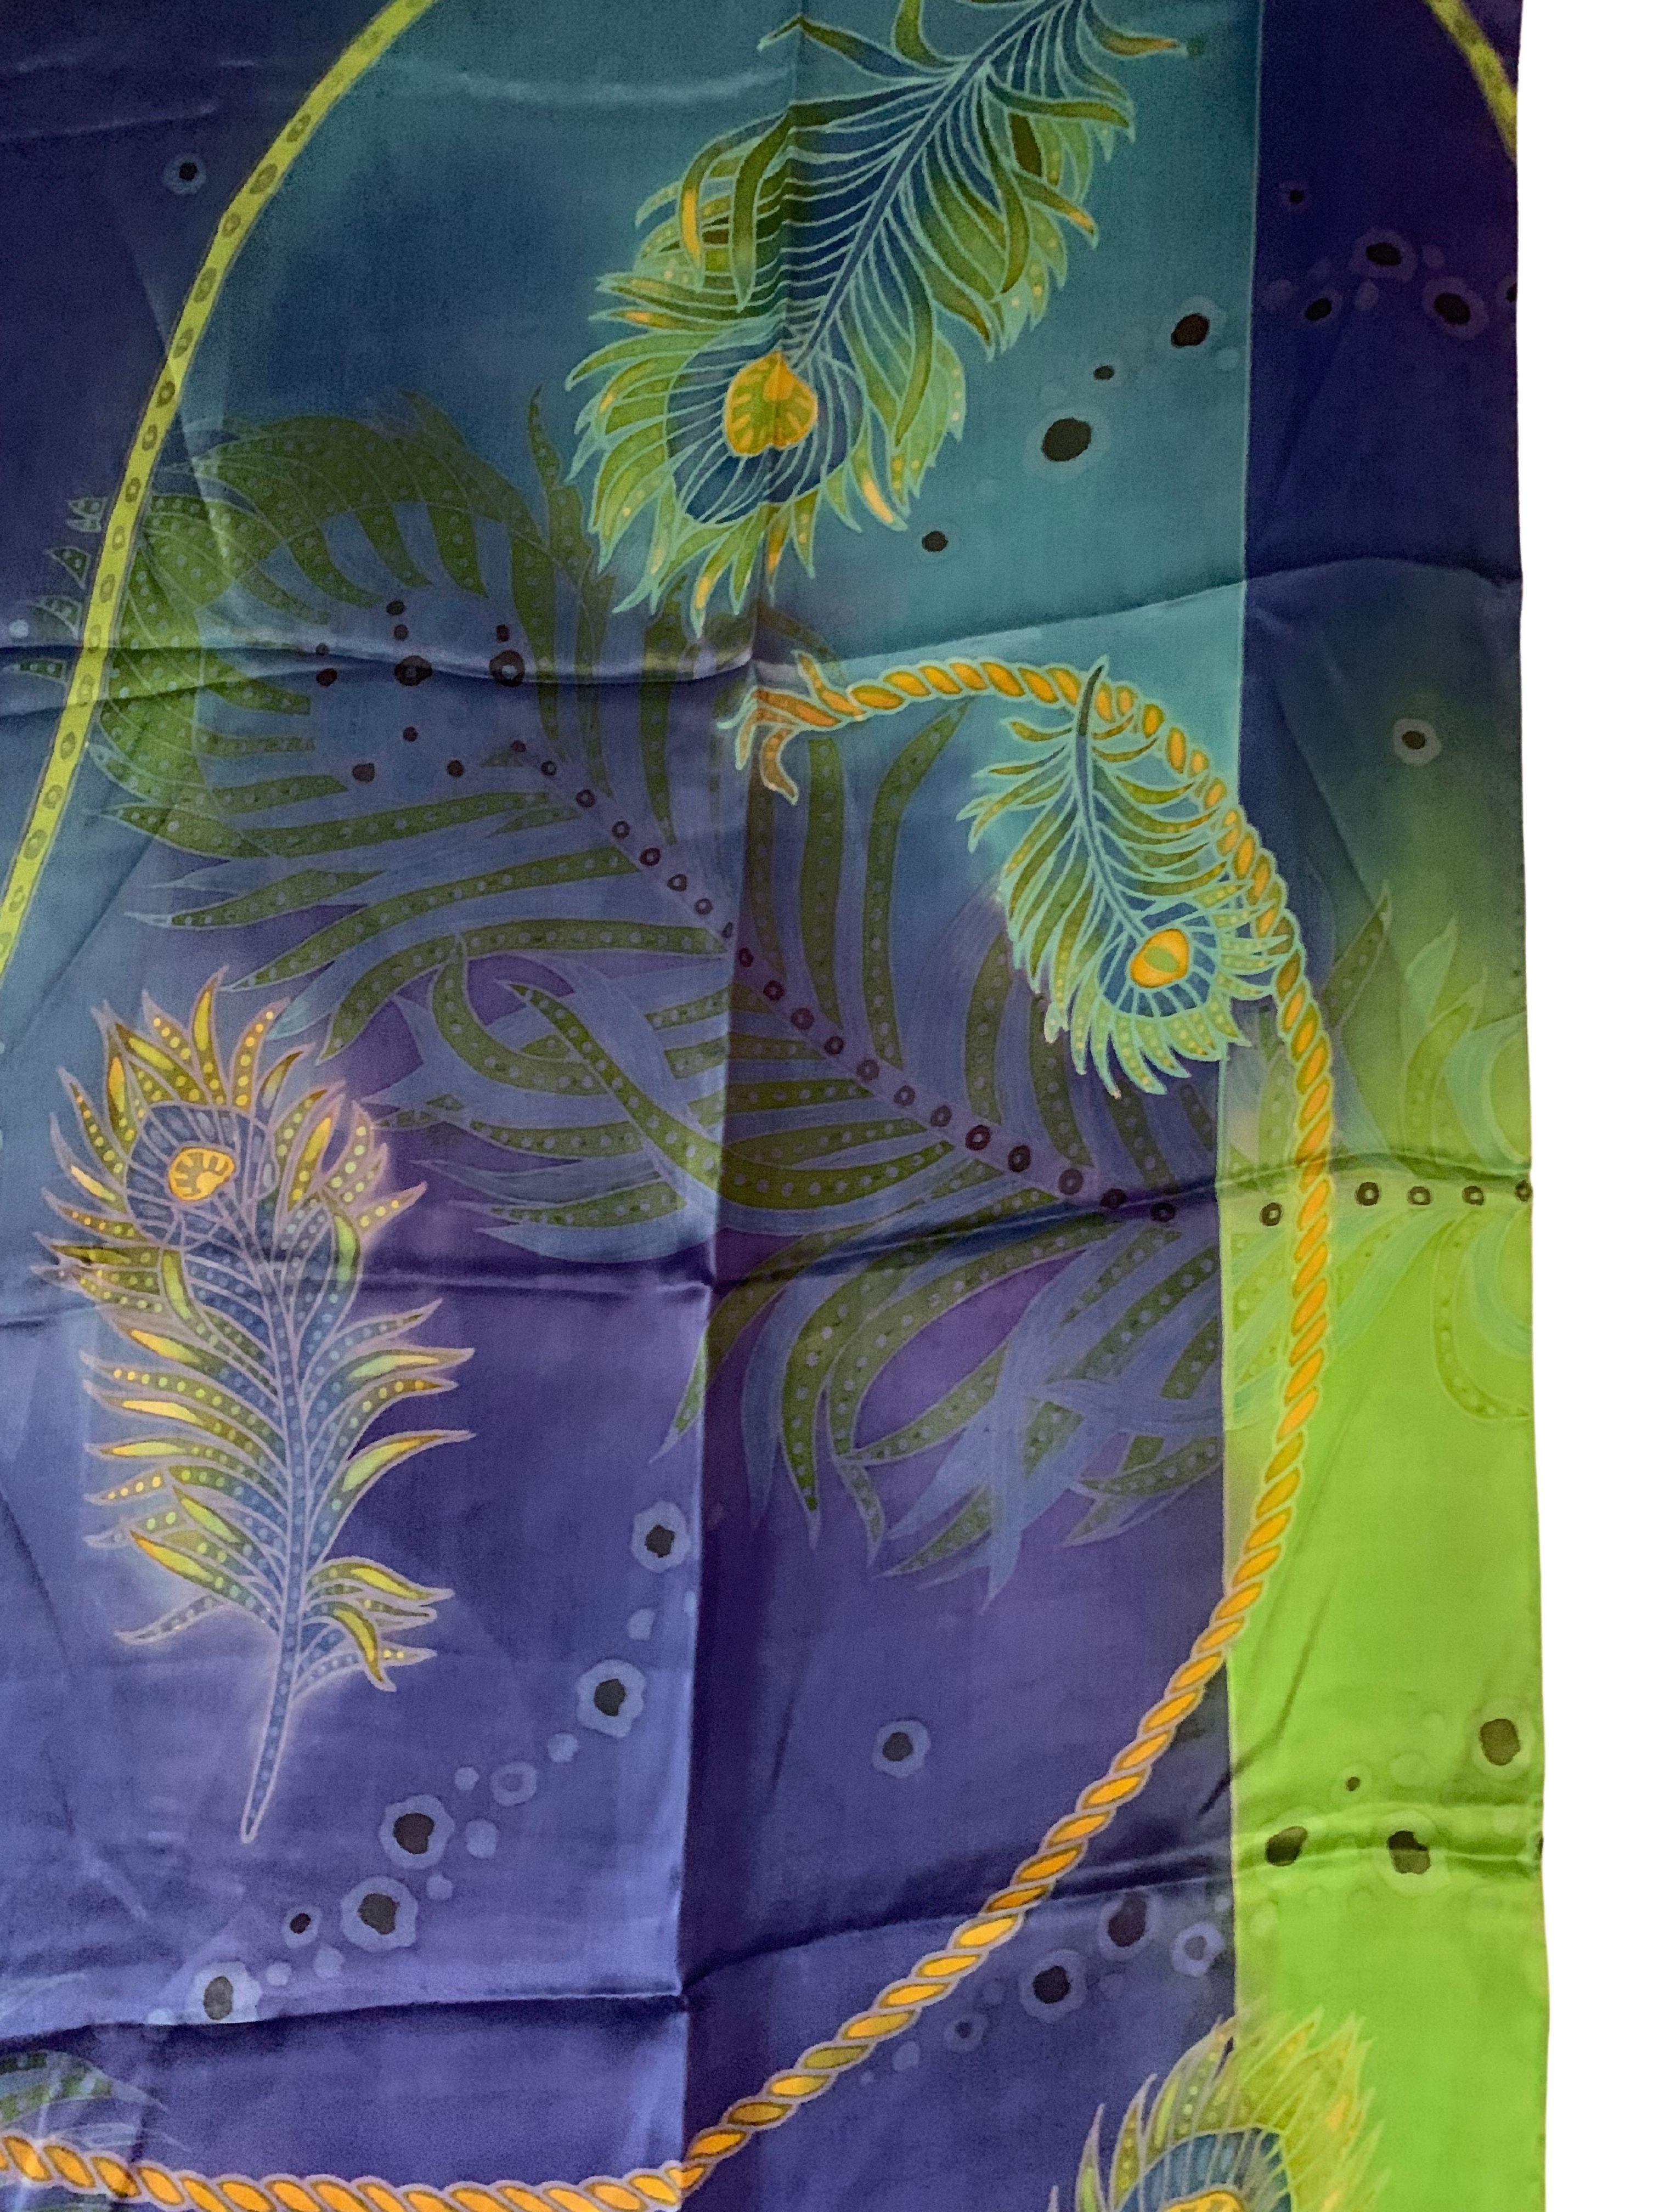 Un magnifique textile en soie fabriqué à la main en Malaisie, avec des détails et des nuances étonnants. Un merveilleux objet décoratif pour apporter chaleur et couleur à tout espace. Ce textile a été fabriqué à la main par des tisserands locaux.